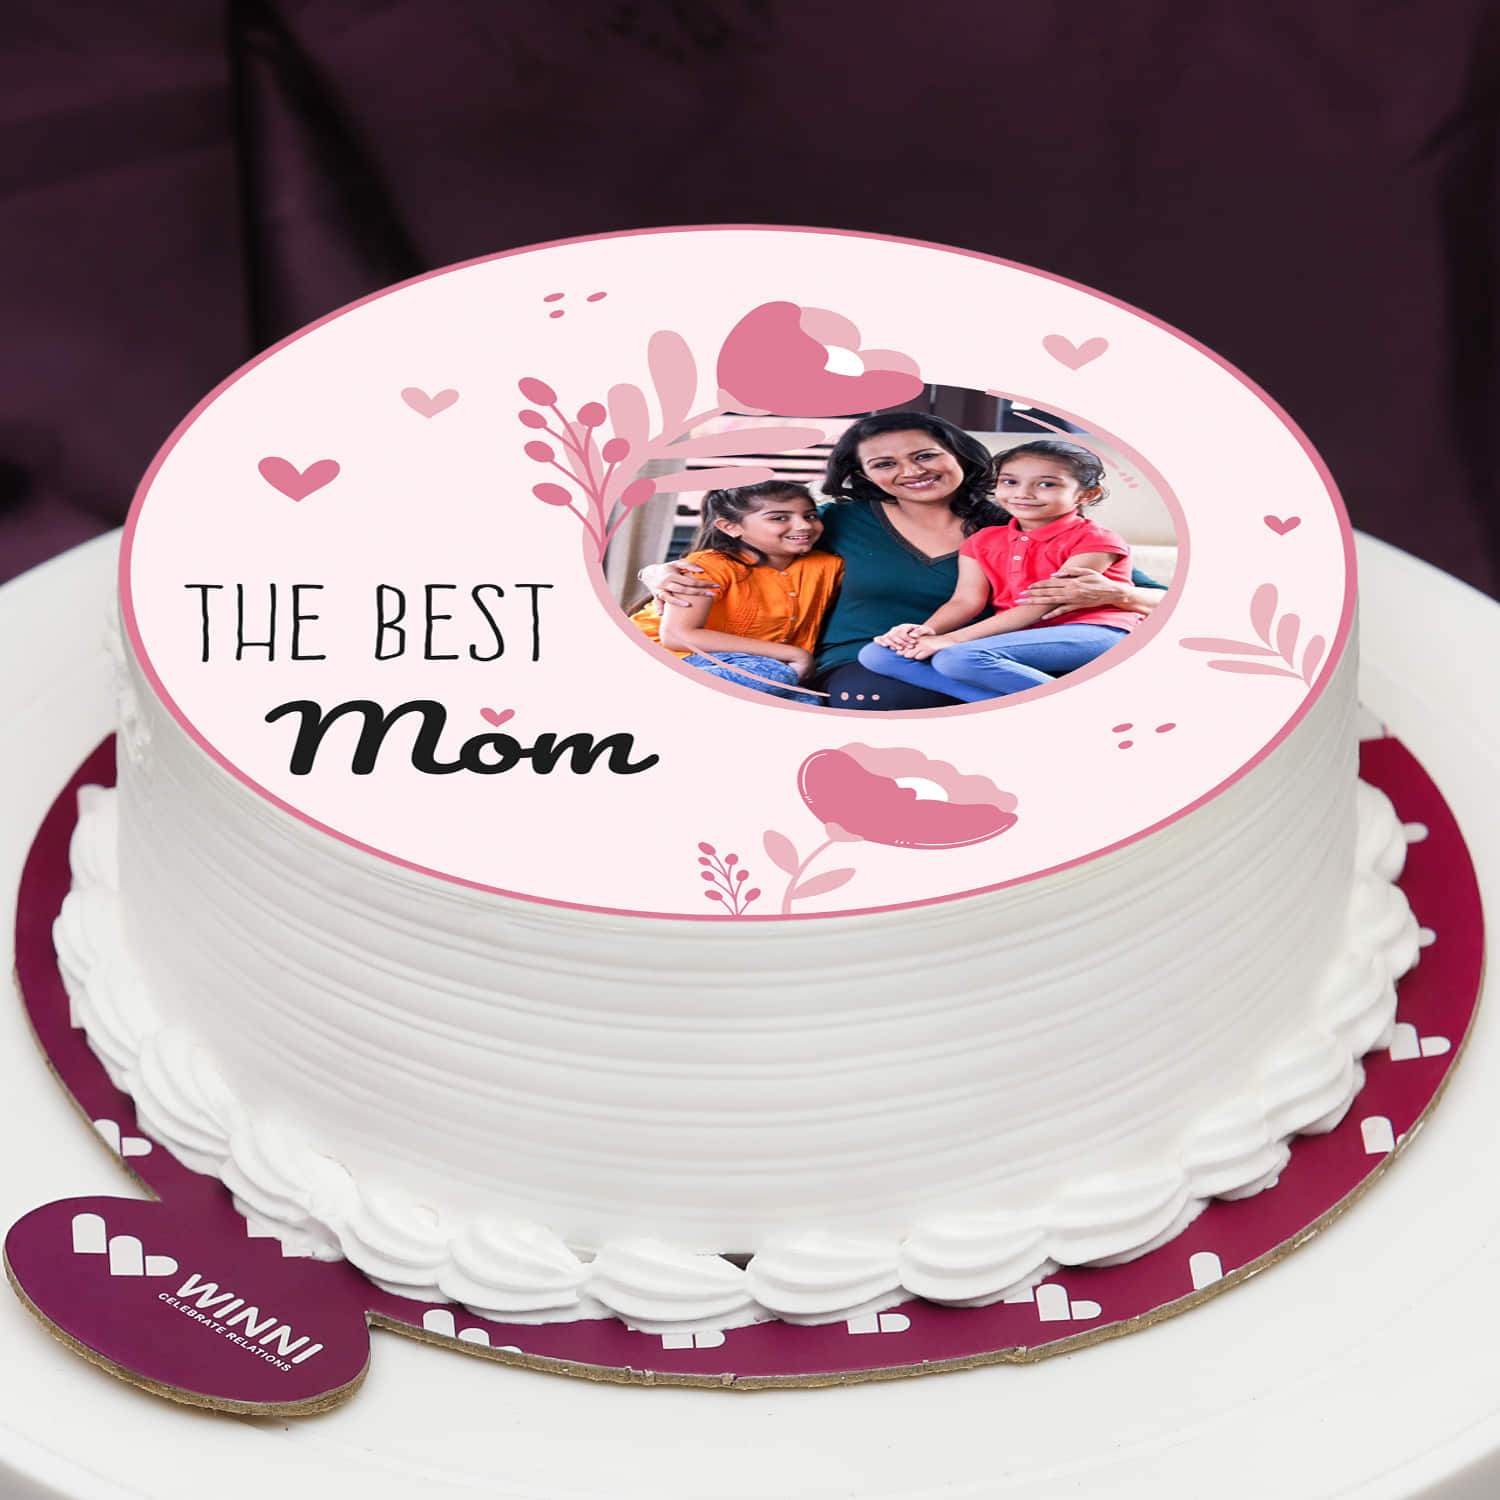 Sweet Mom cake, Lakwimana